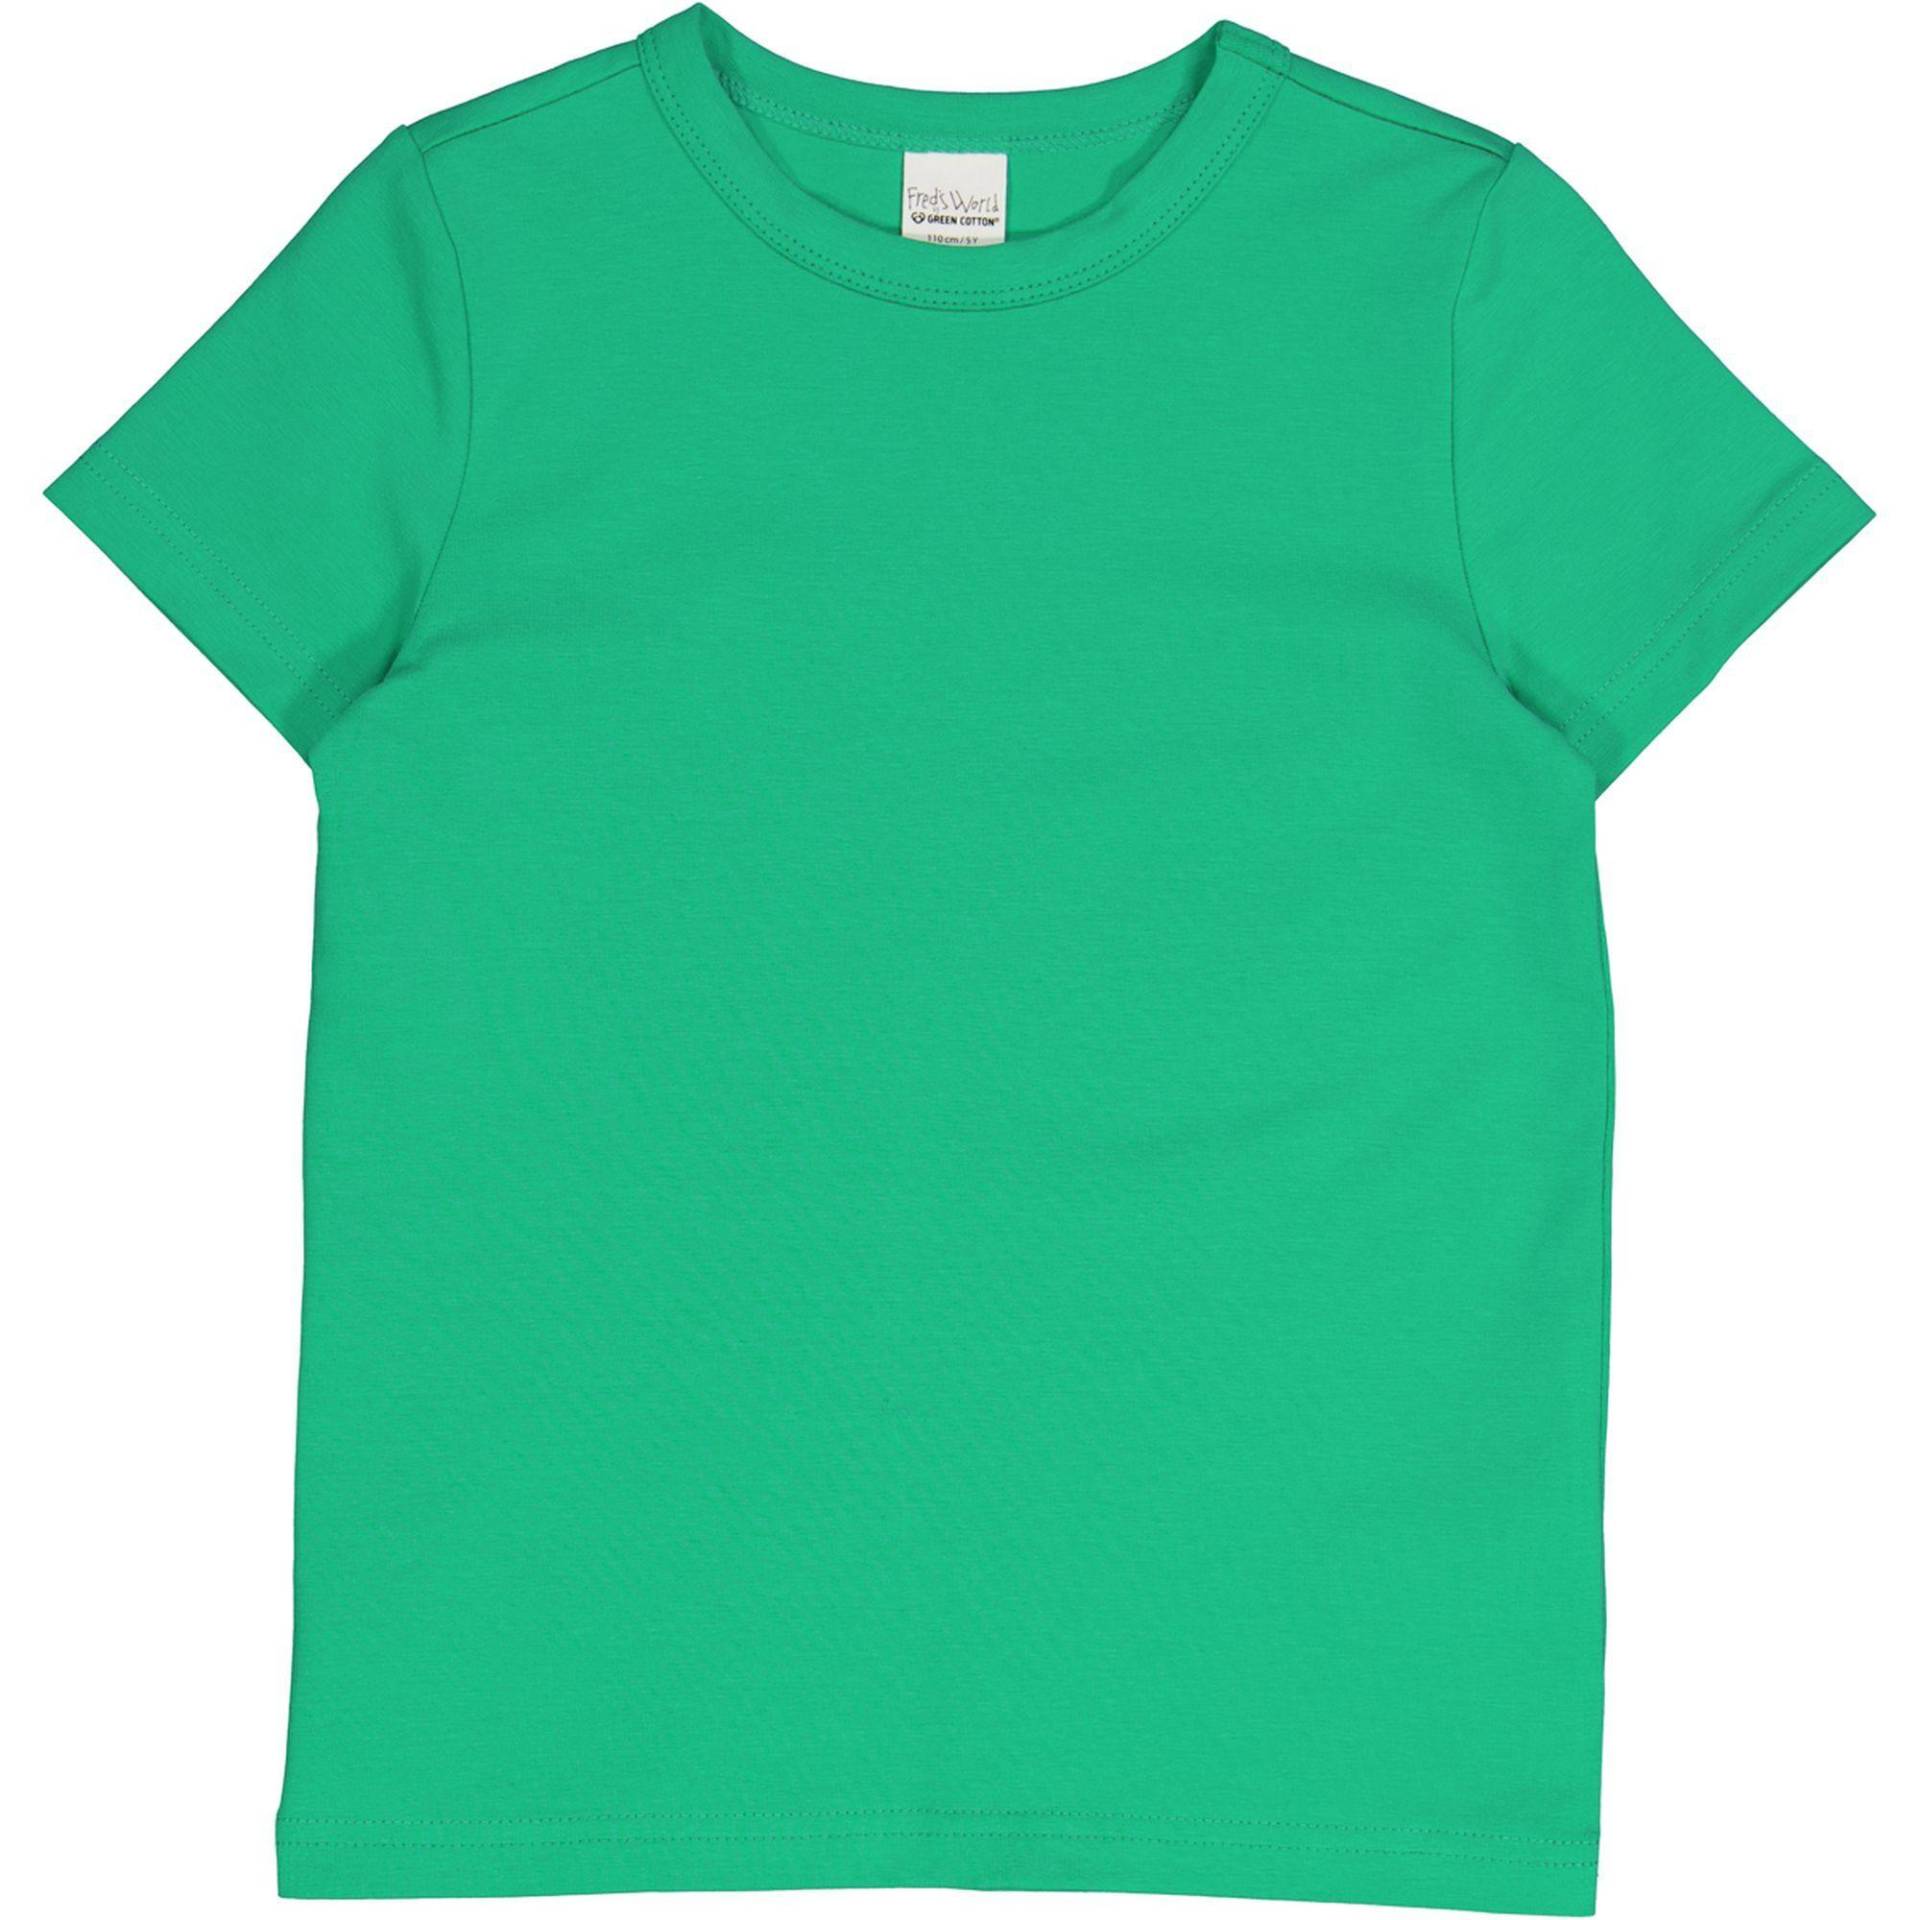 T-shirt Unisex  122 von Fred`s World by Green Cotton